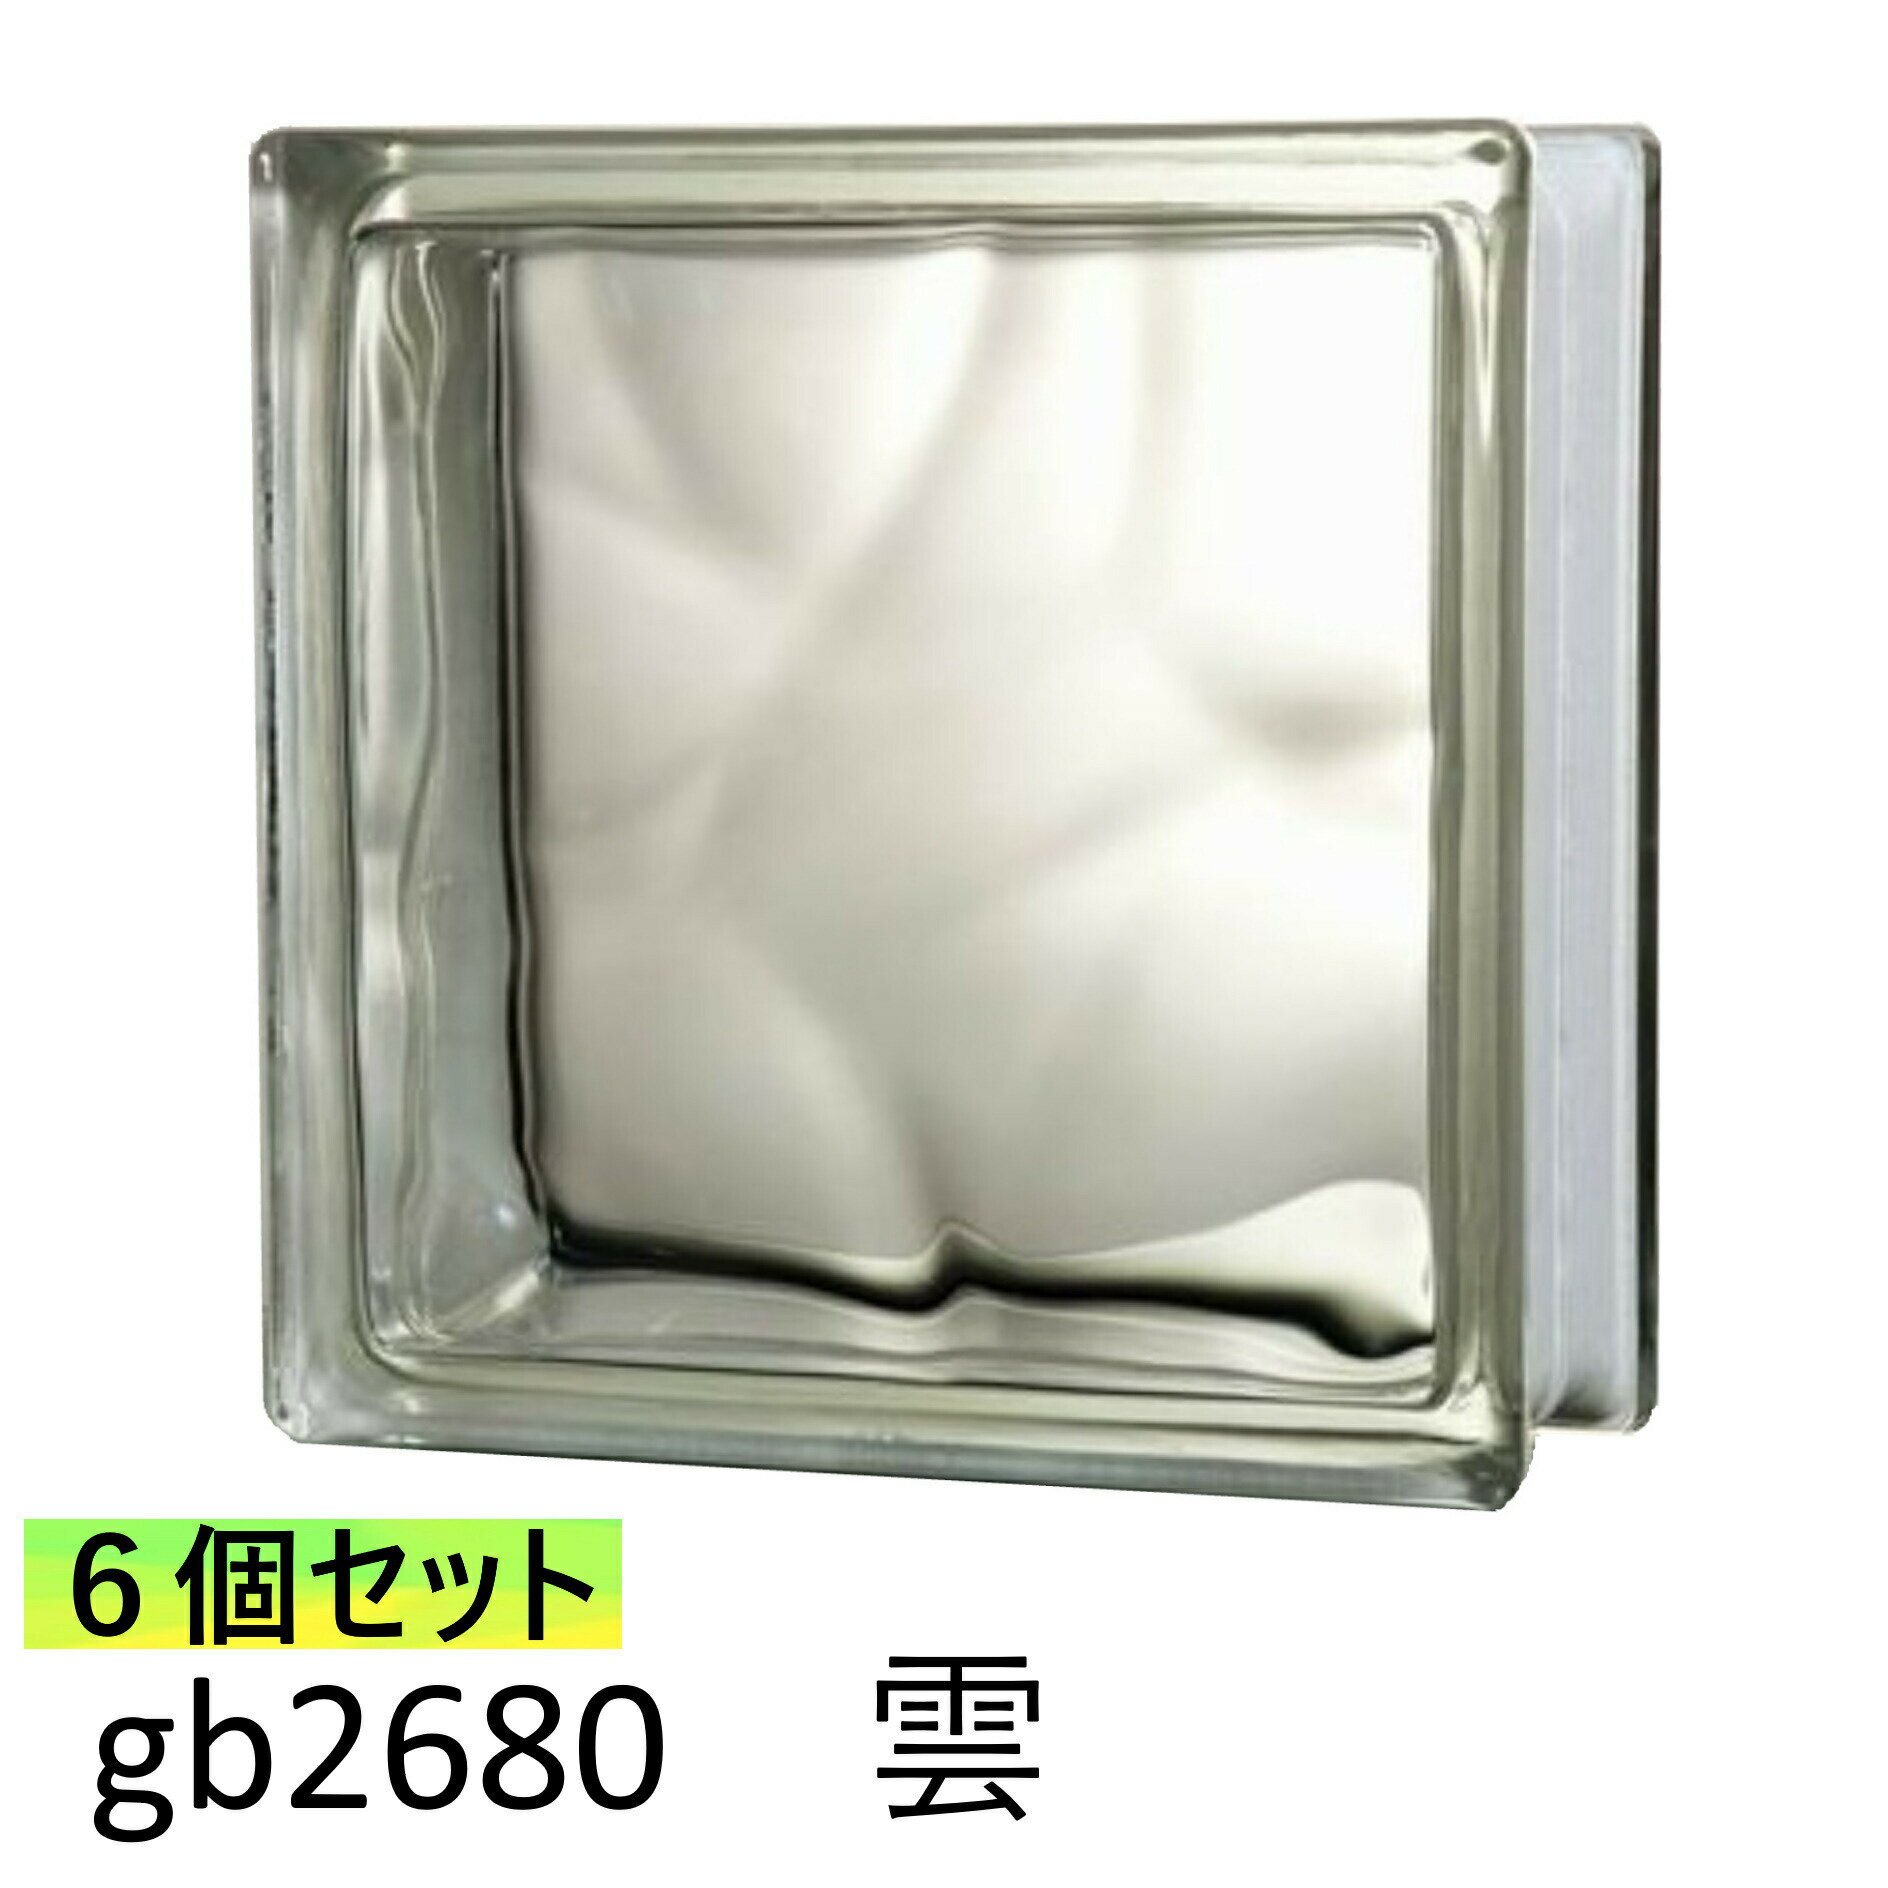 6個セット ガラスブロック 世界で有名なブランド品 厚み80mmクリア色雲・クラウディ gb2680-6p